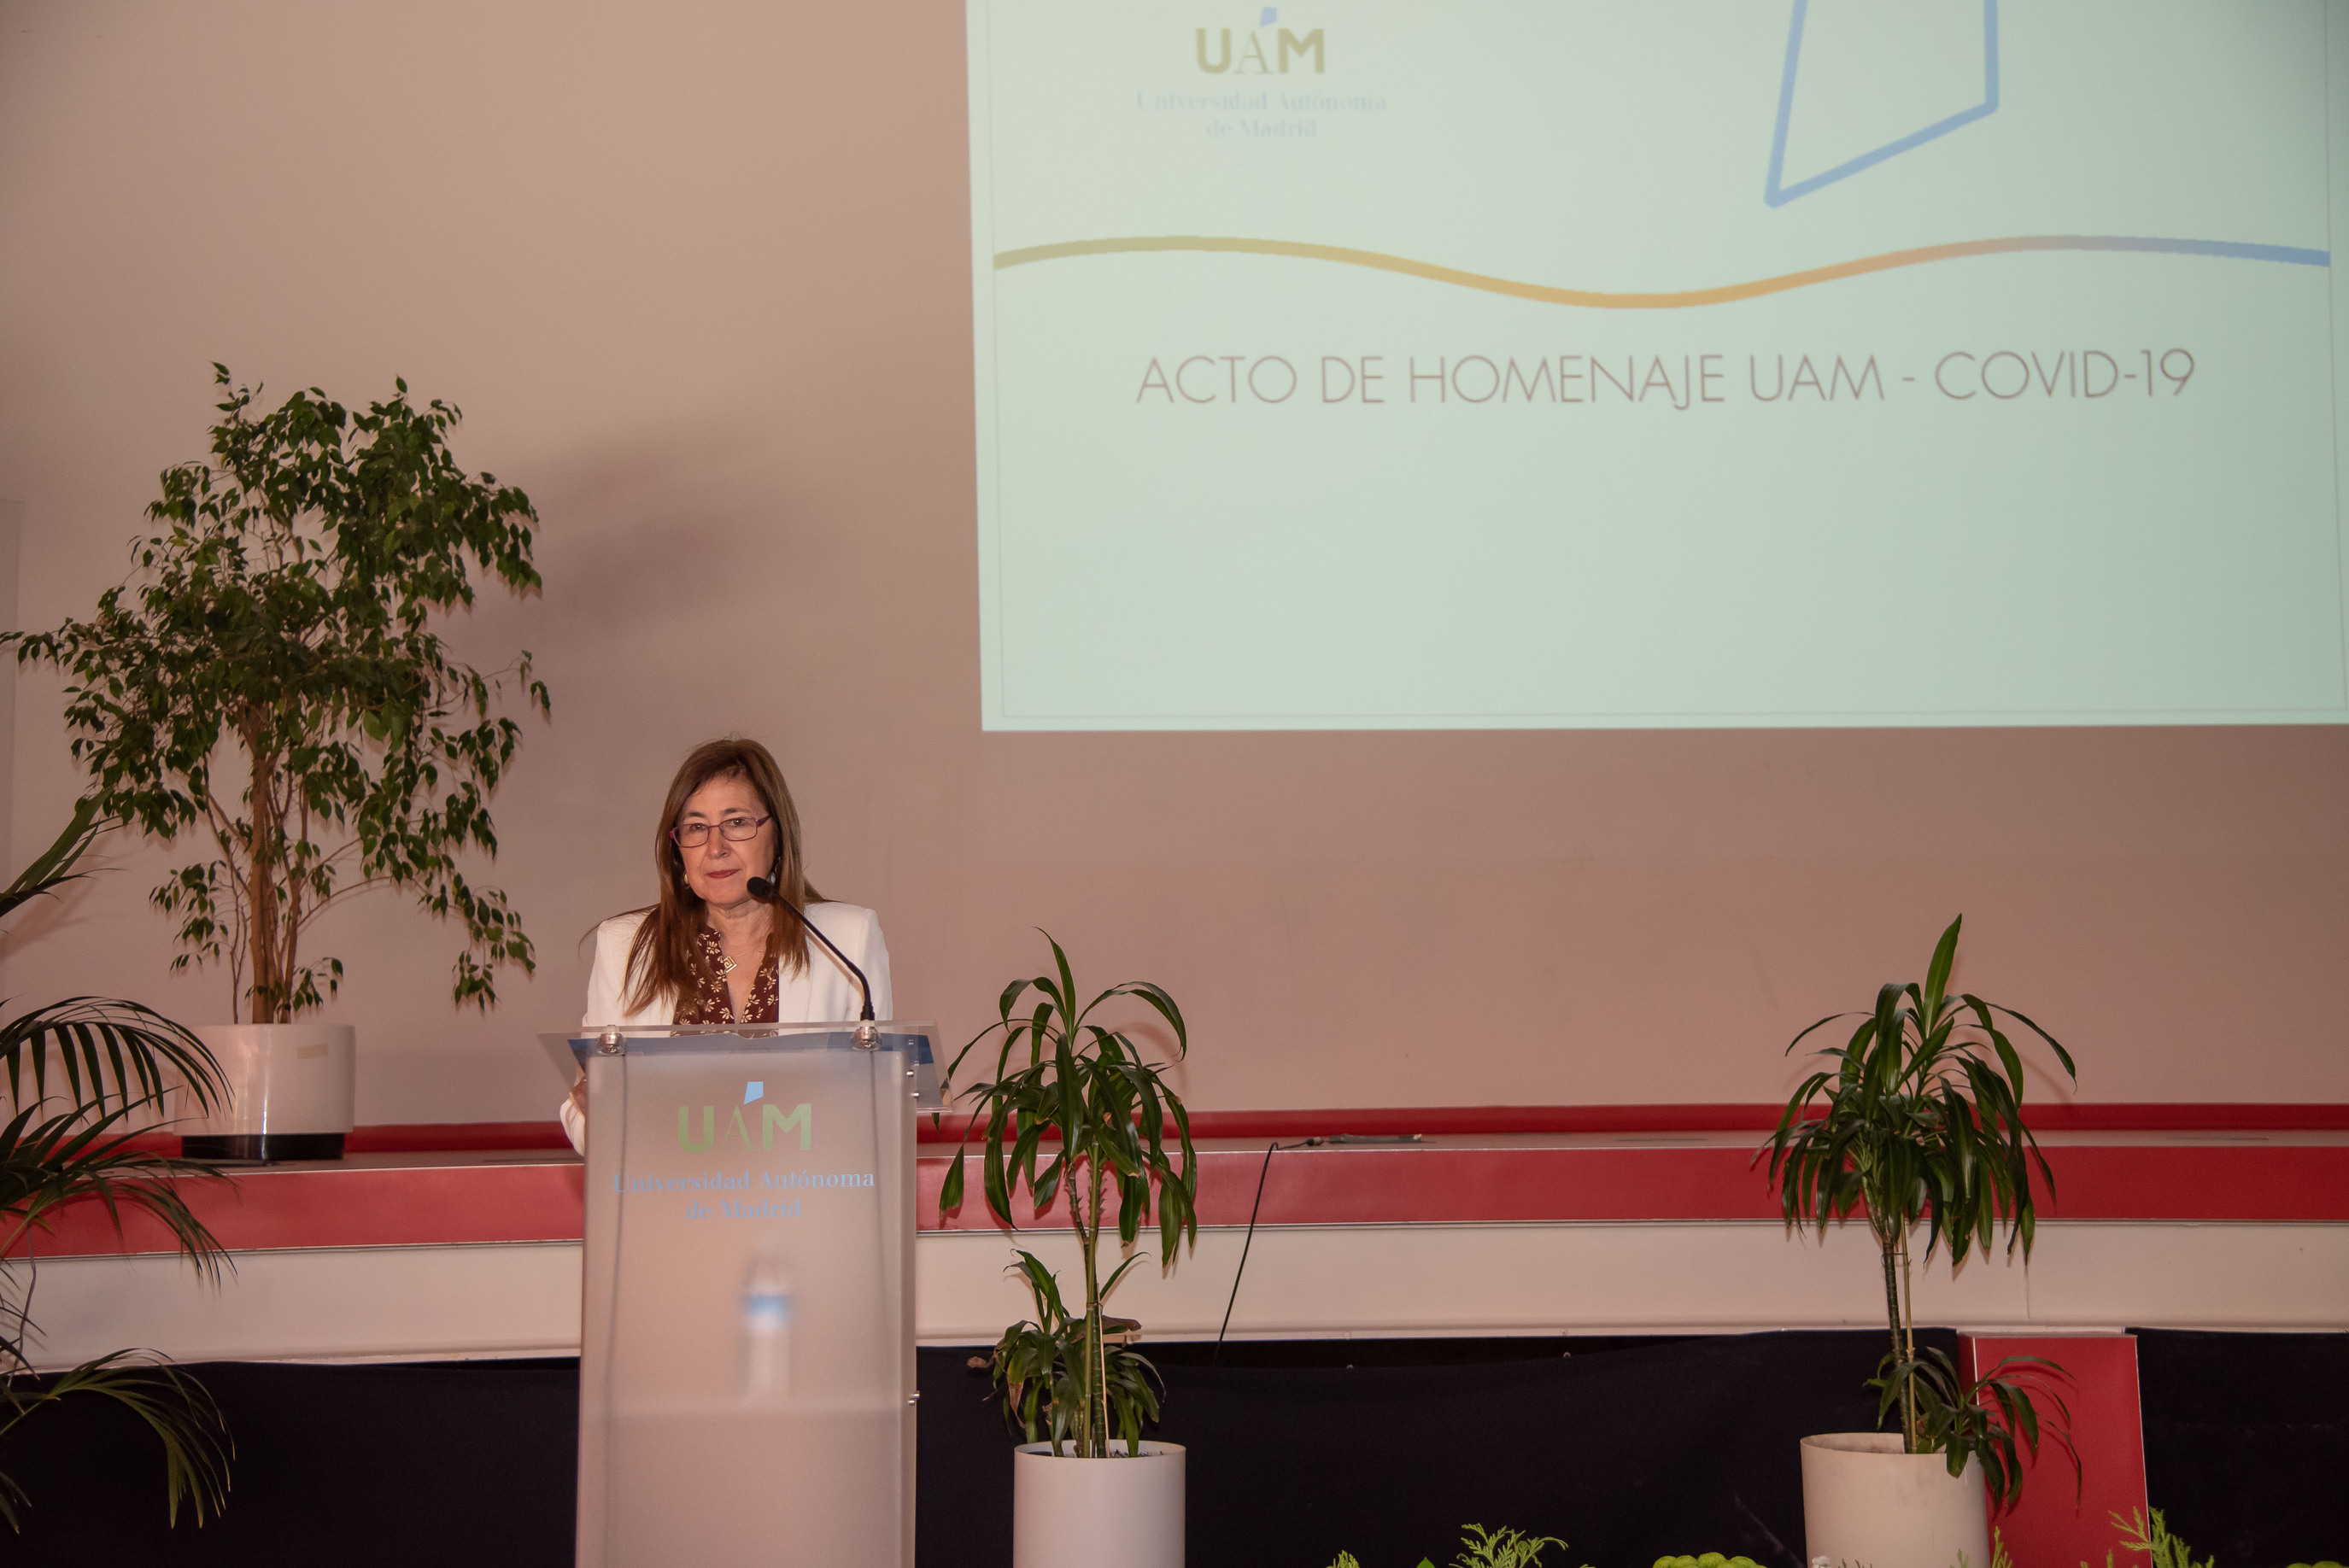 La rectora Amaya Mendikoetxea, en un momento de su intervención en el Acto de Homenaje COVID-19 / UAM